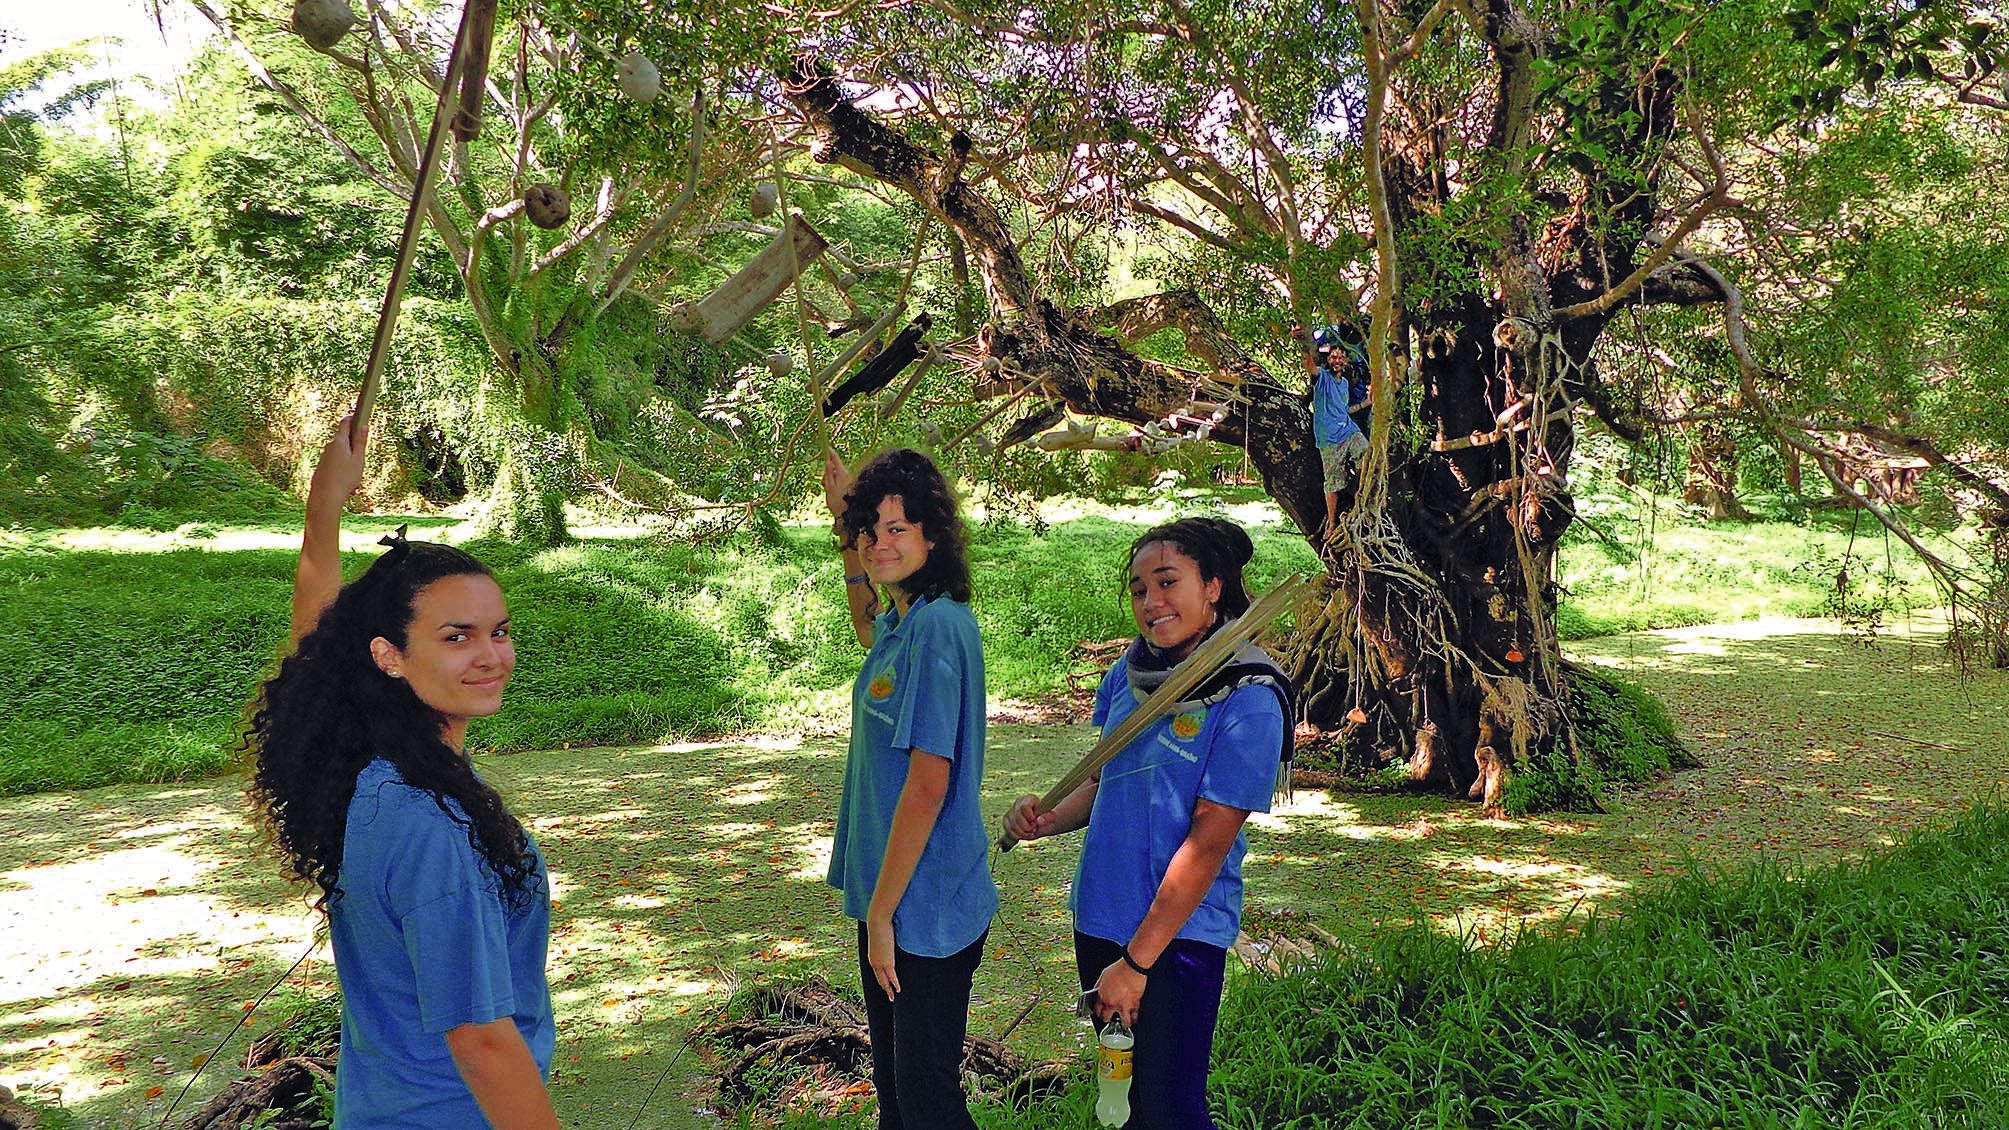 Les élèves du collège Théodore-Braïno de La Foa ont réalisé une passerelle entre deux arbres pour marquer le lien et rester ainsi dans le thème principal.